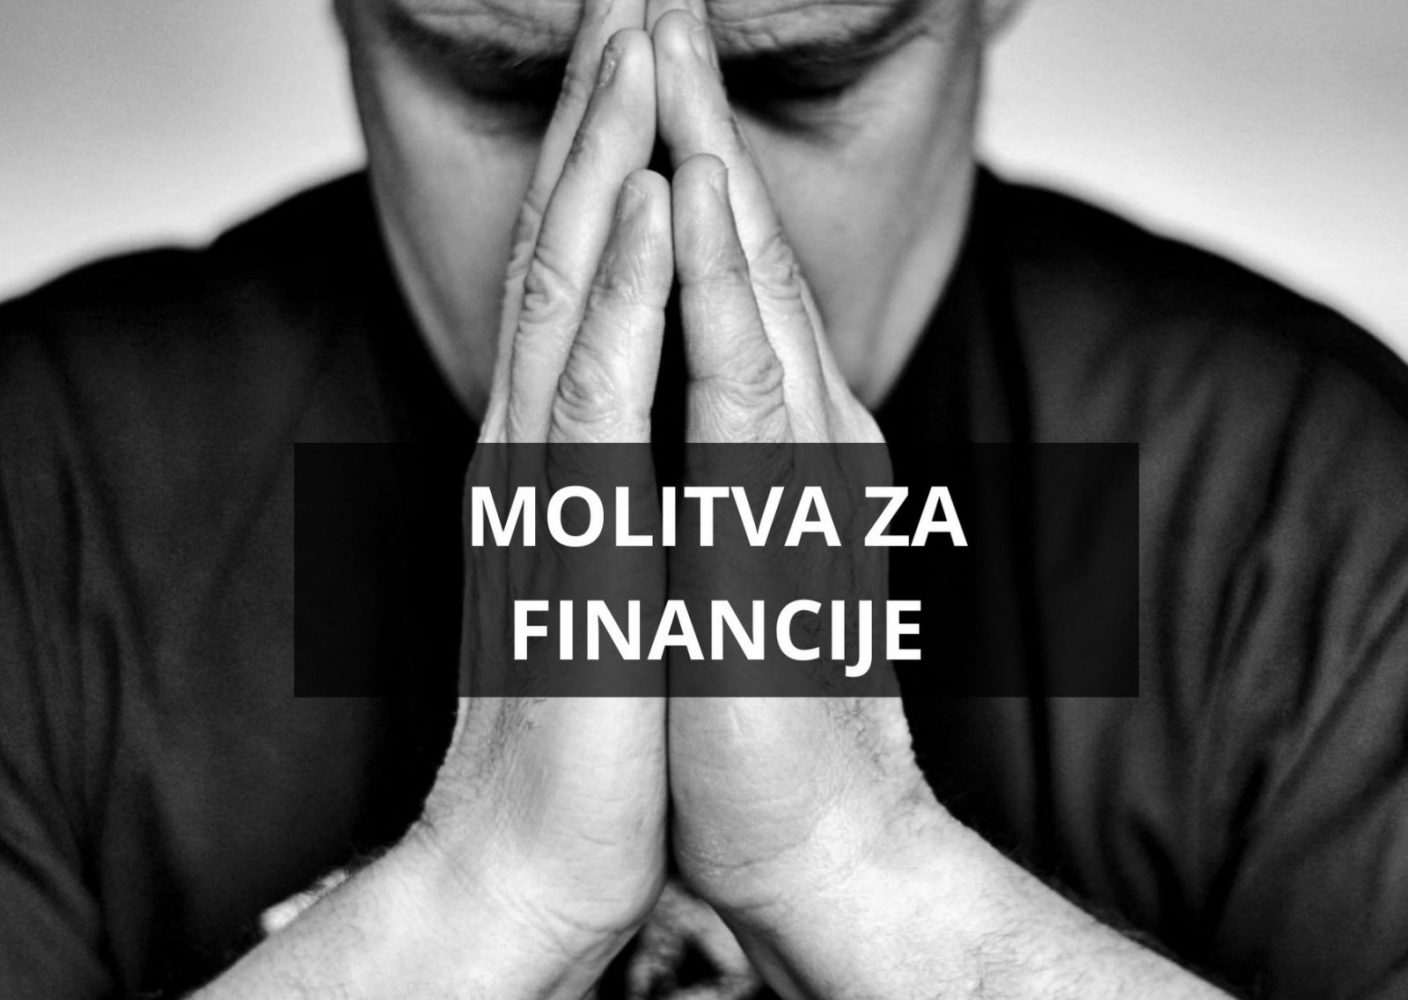 Molitva za financije